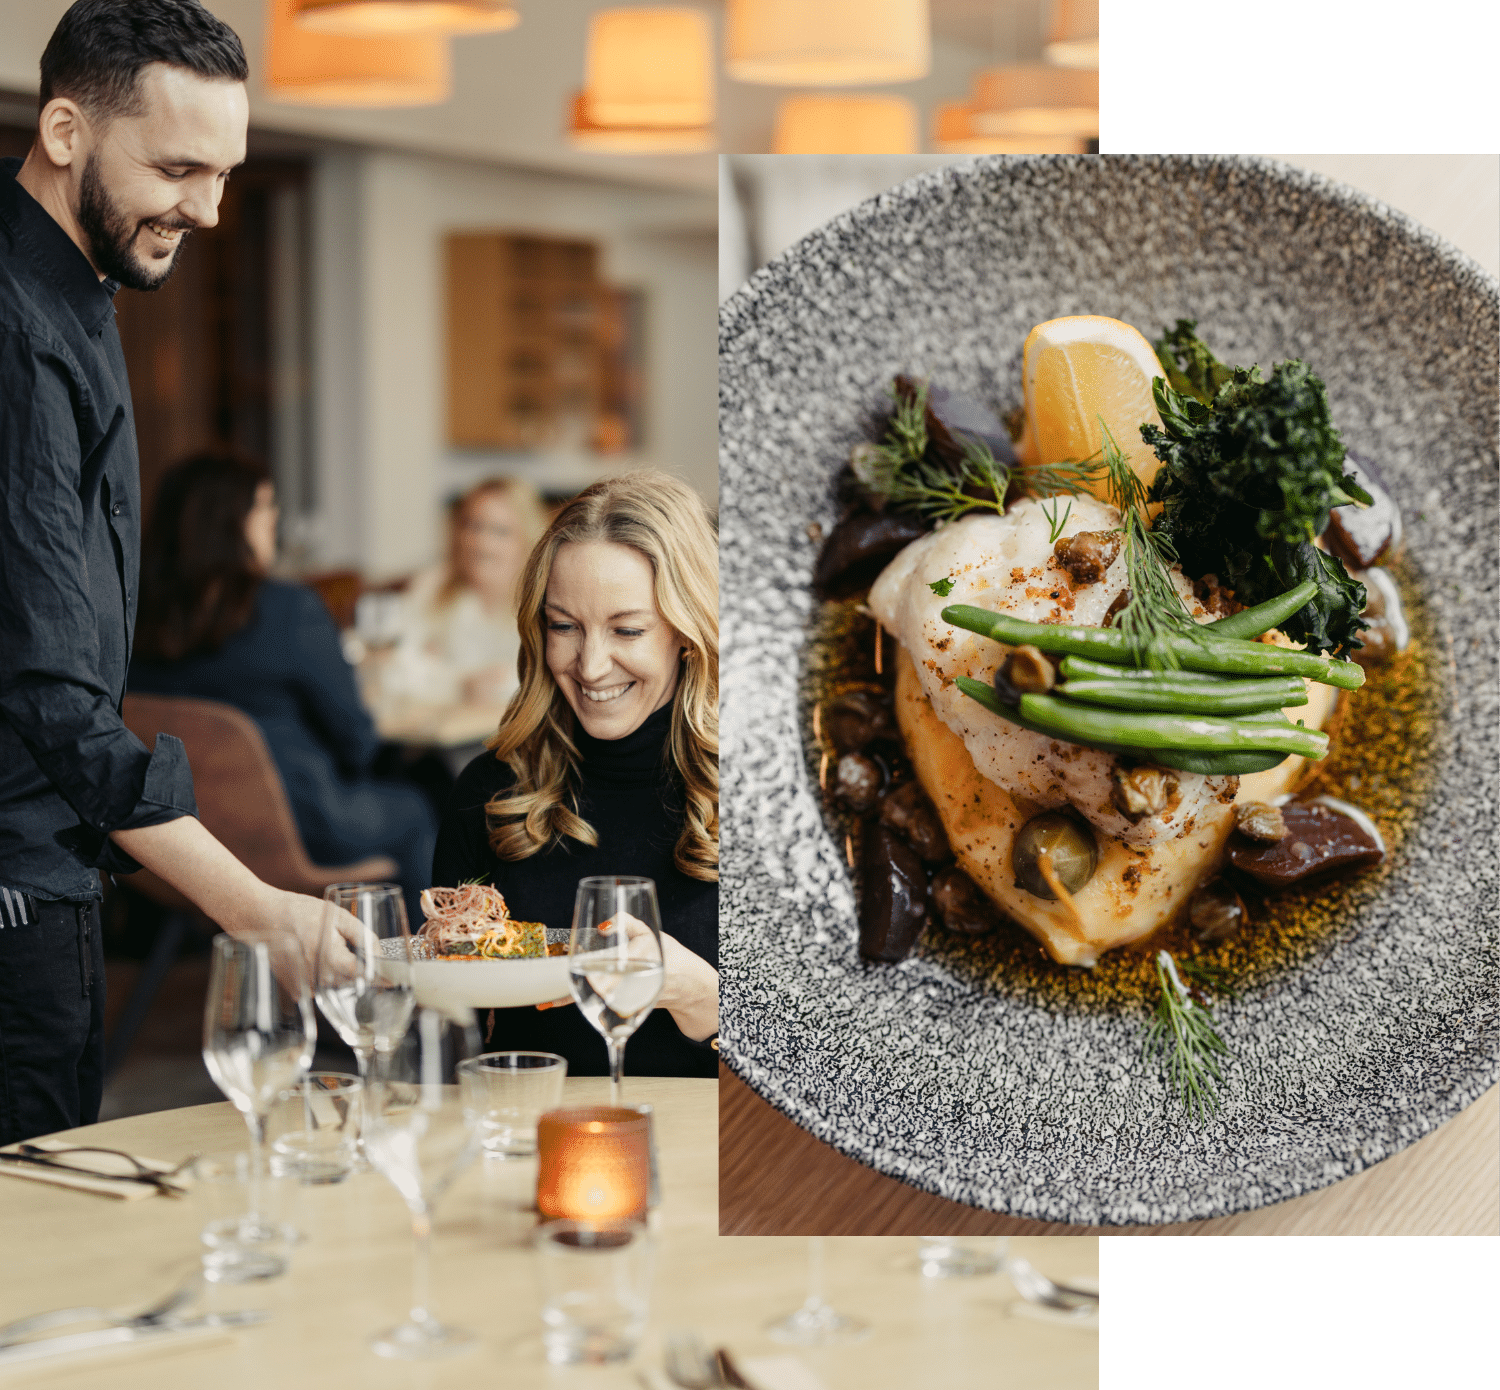 En servitör som serverar en kvinna, båda med ett stort leende. Framför syns en närbild av maten från restaurangen.